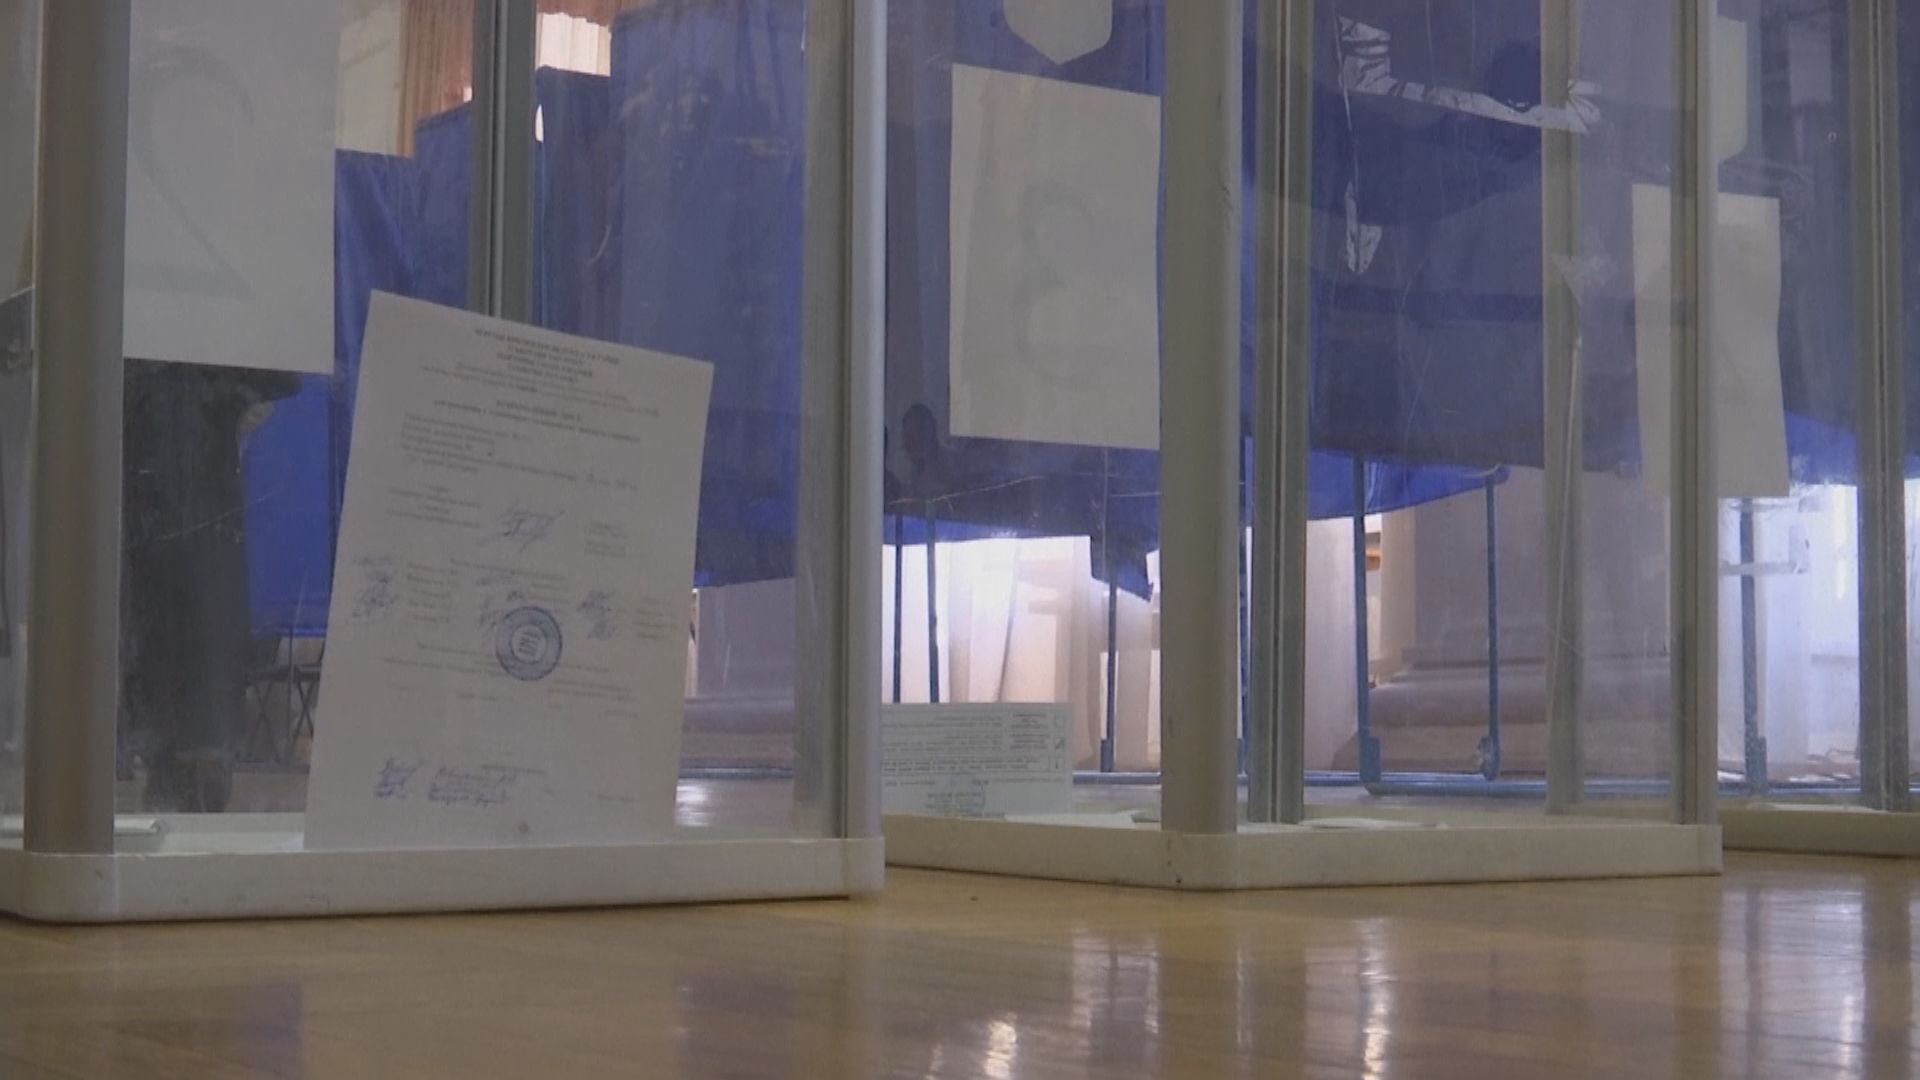 烏克蘭總統選舉第二輪投票展開